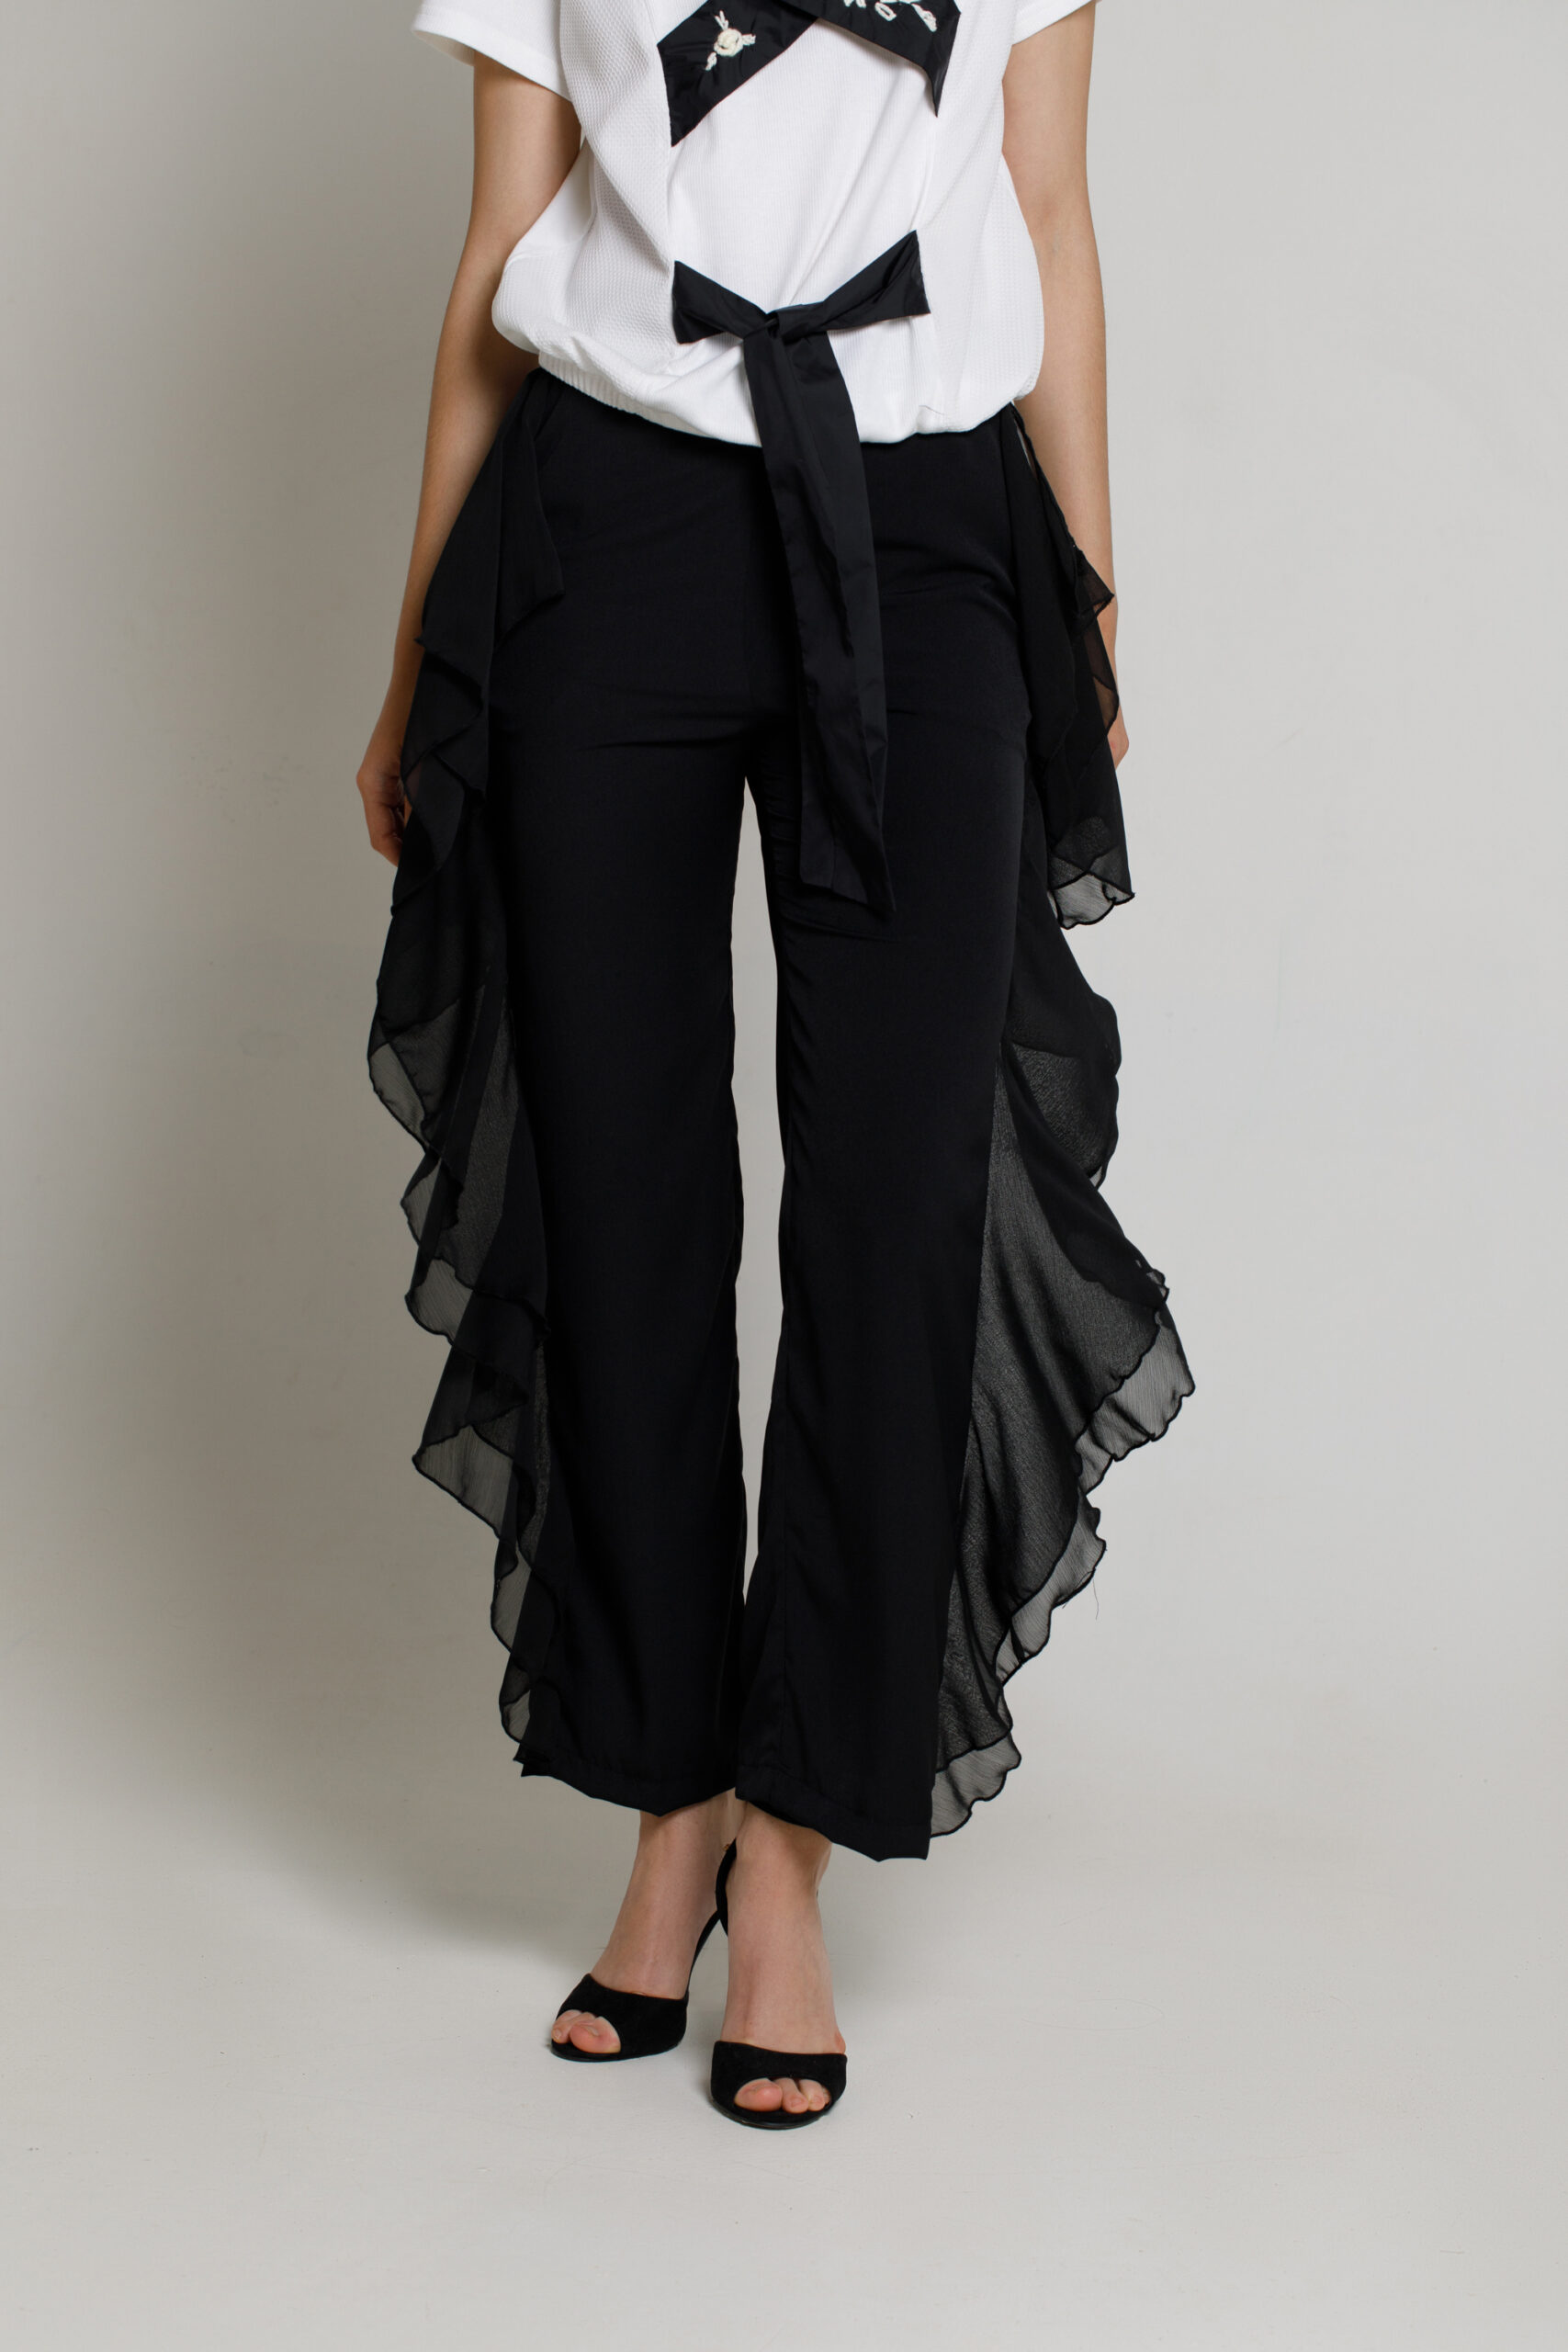 Pantalon SORREL elegant negru din voal si viscoza. Materiale naturale, design unicat, cu broderie si aplicatii handmade